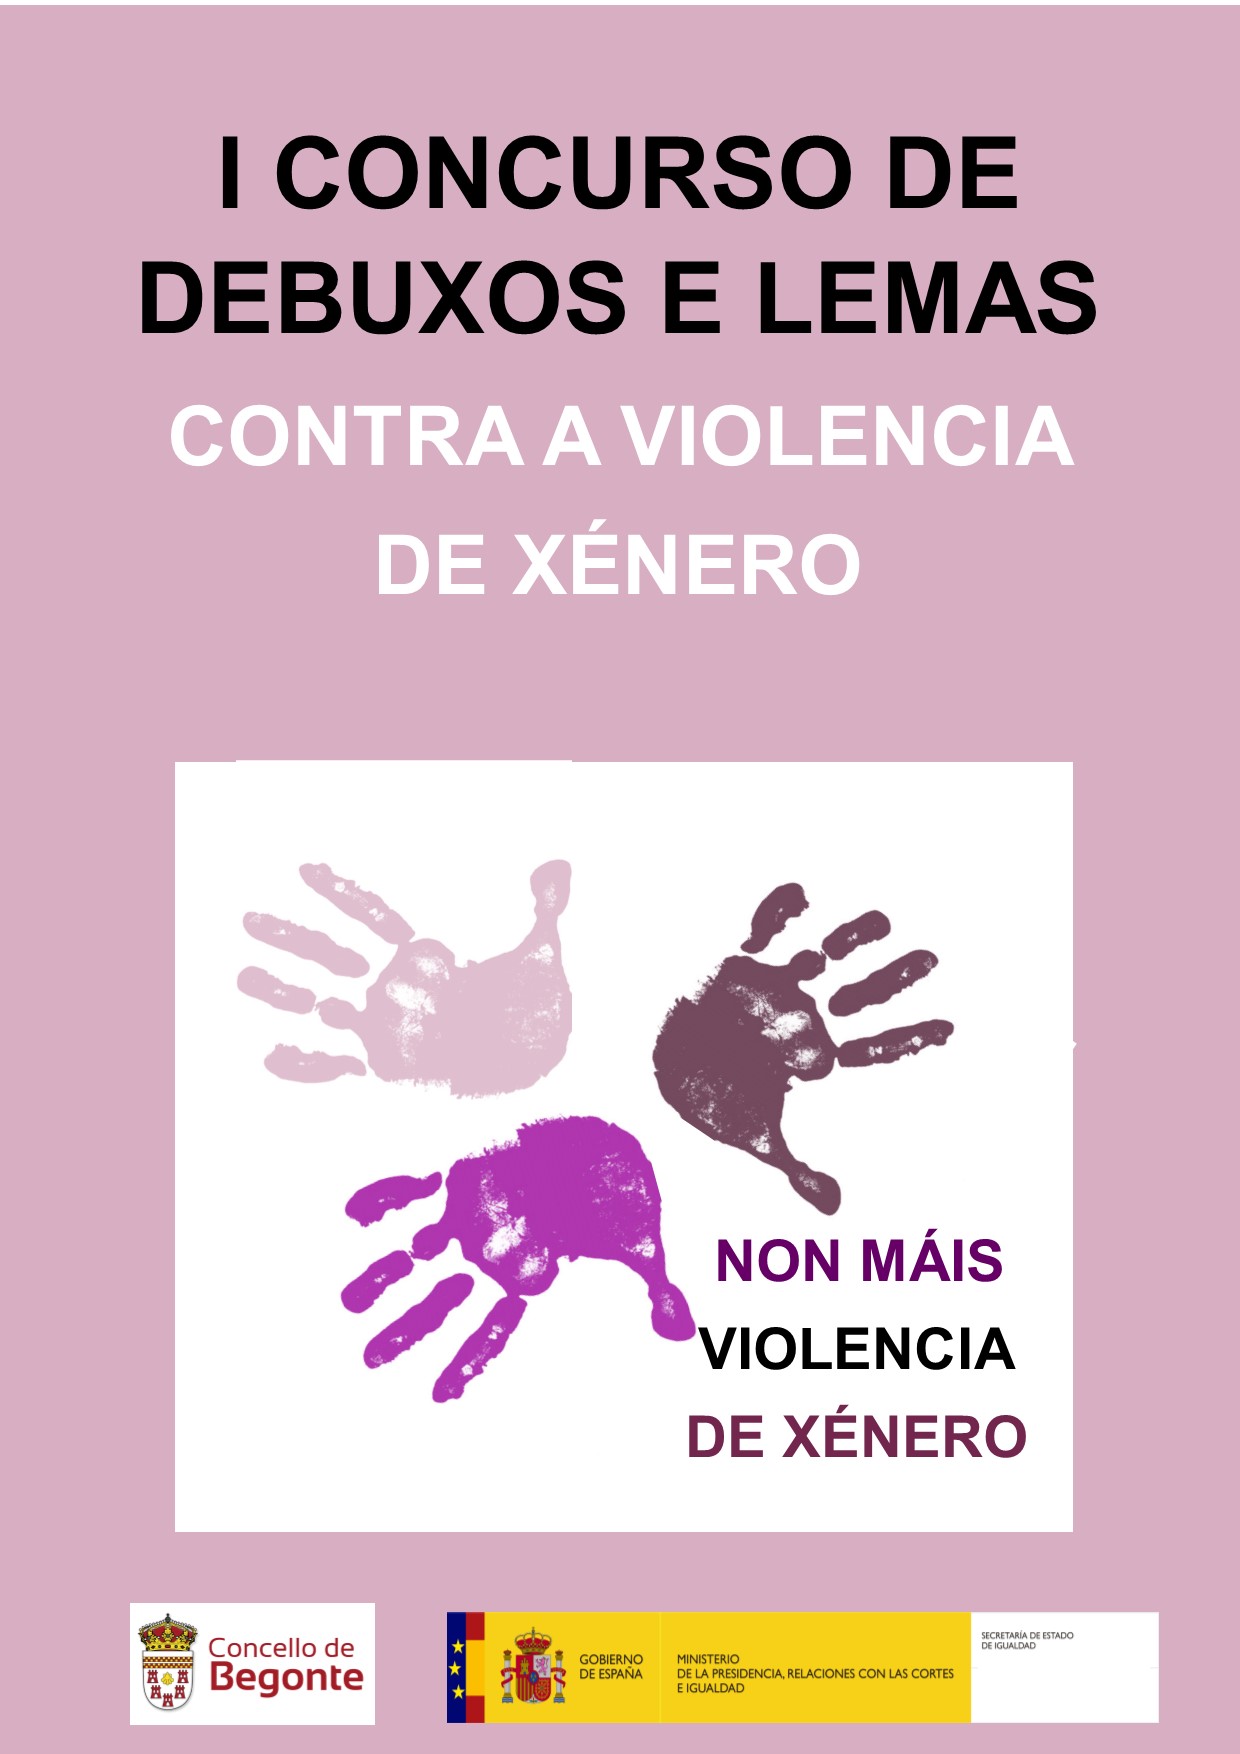 I CONCURSO DE DEBUXOS E LEMAS CONTRA A VIOLENCIA DE XÉNERO